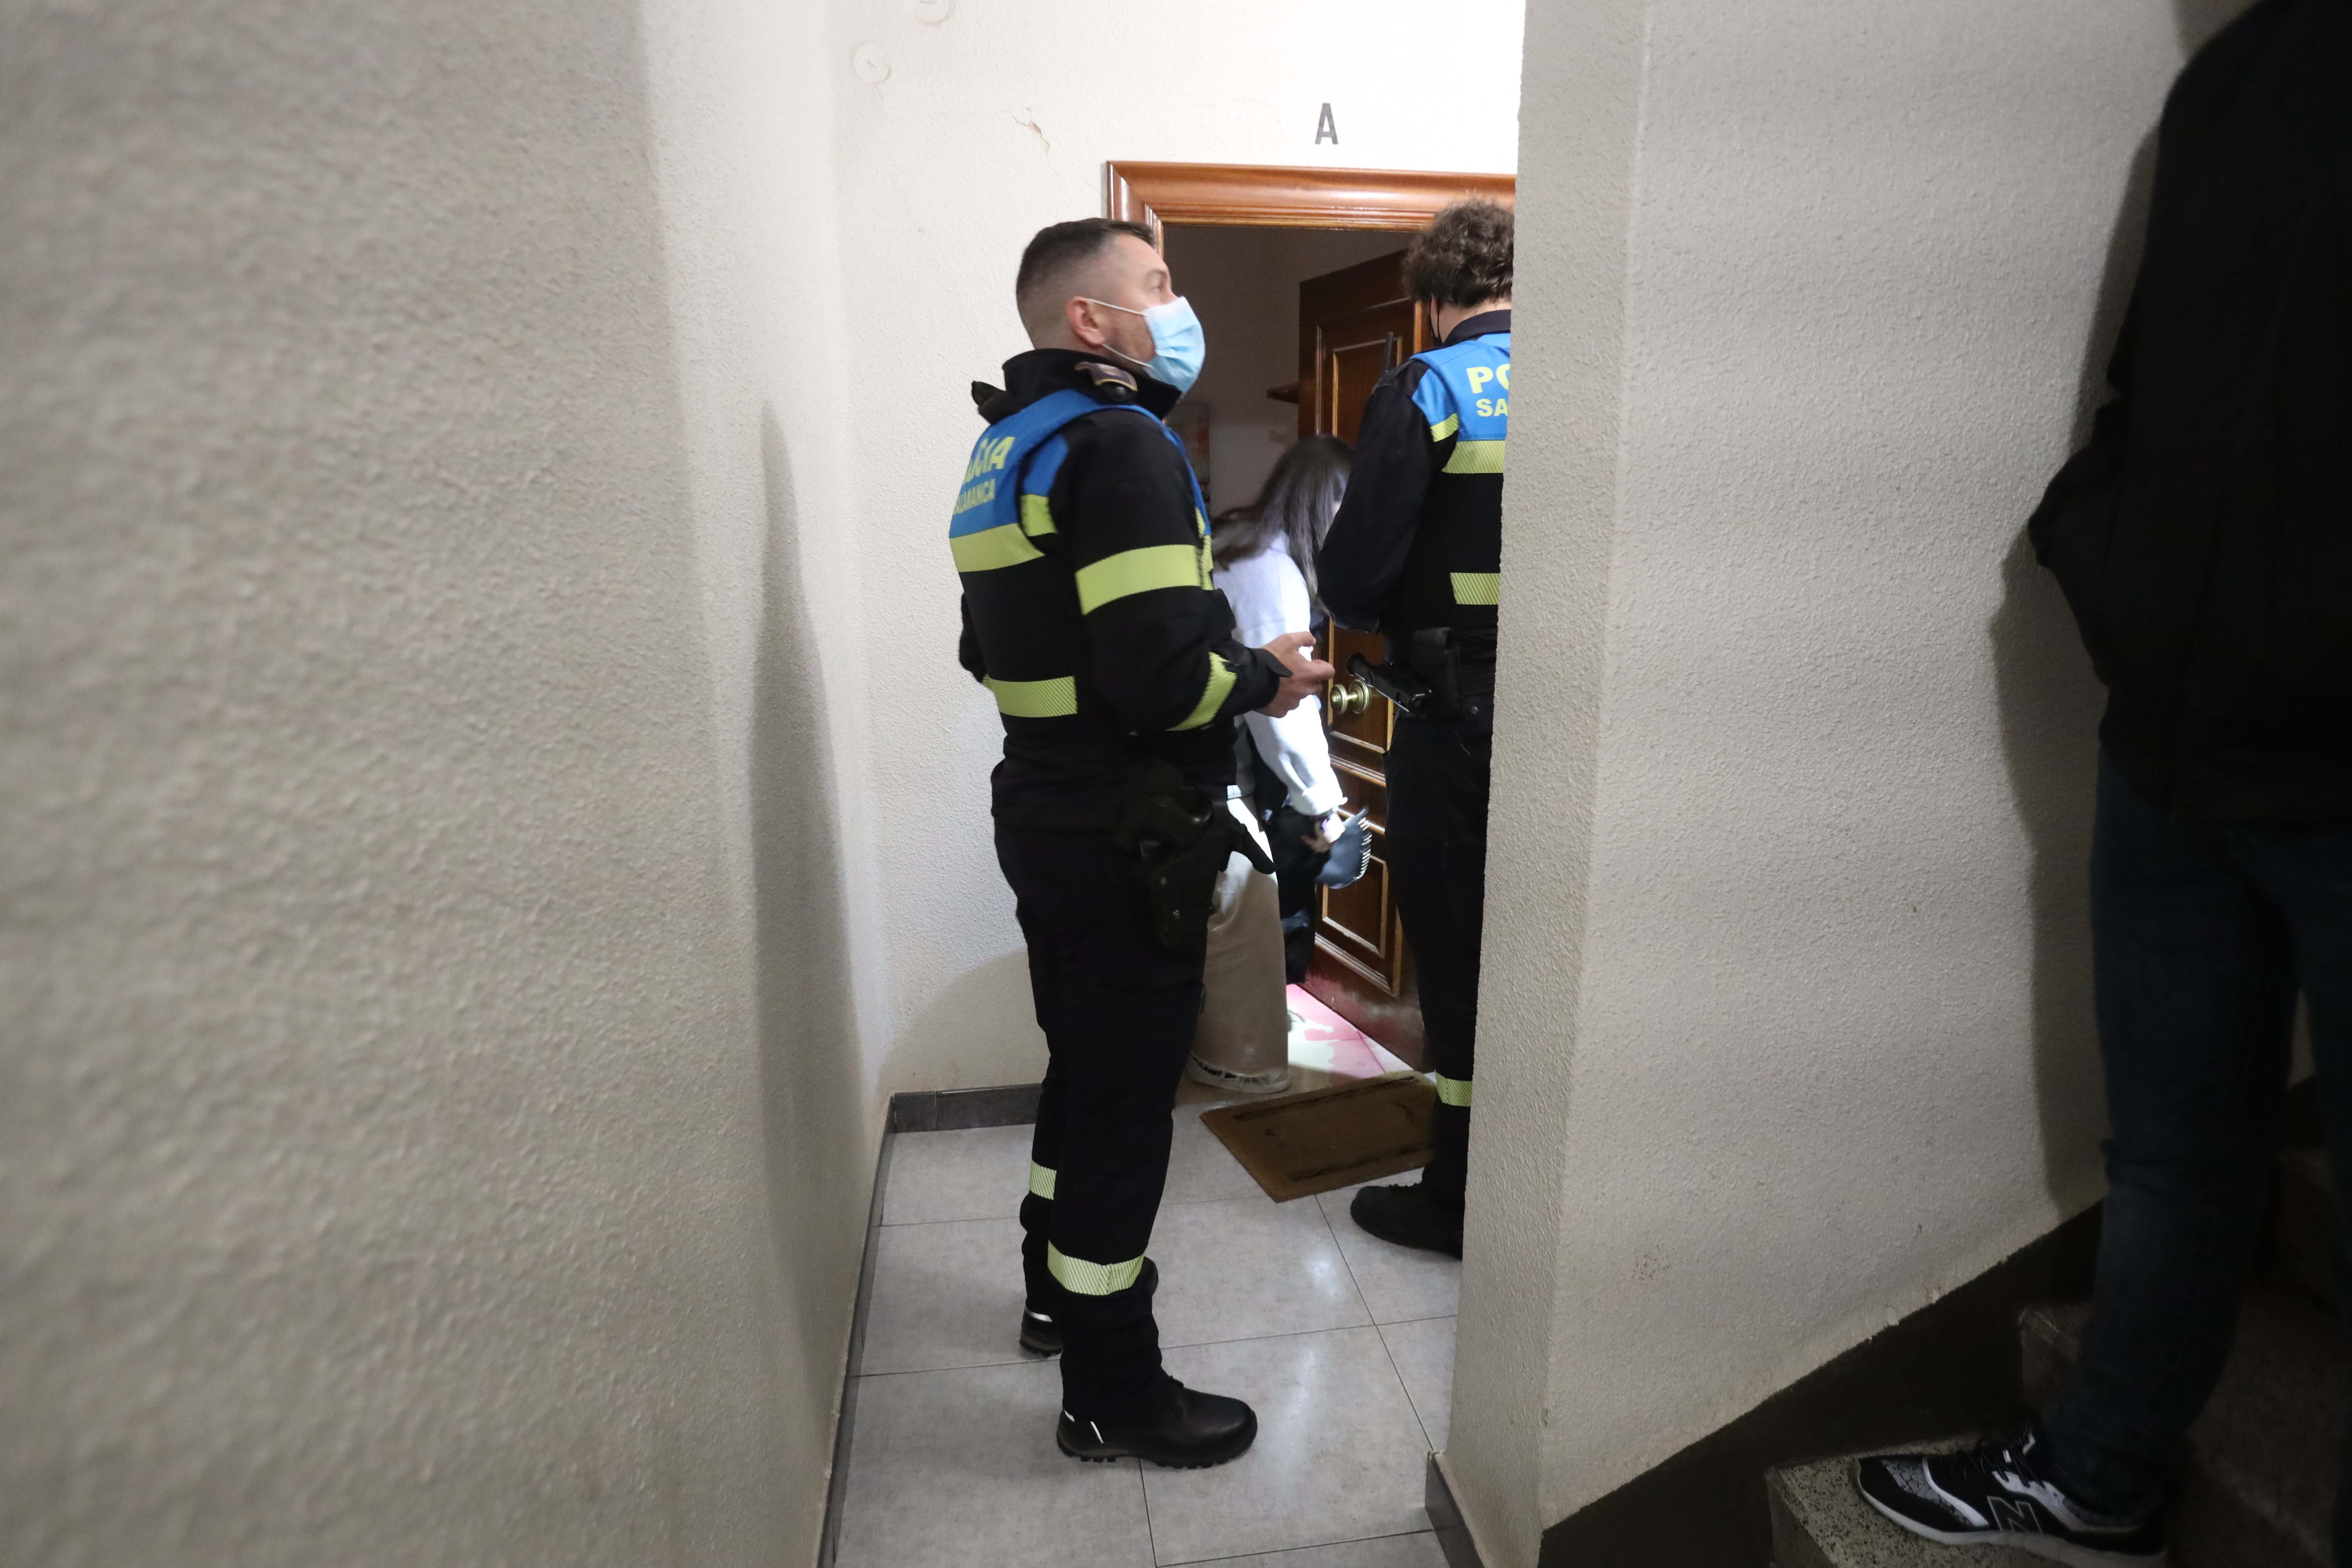  Las multas e incidentes nocturnos crecen en Salamanca: 170 sanciones por no llevar mascarilla, 7 fiestas en pisos y una agresión con un vaso en la noche del jueves